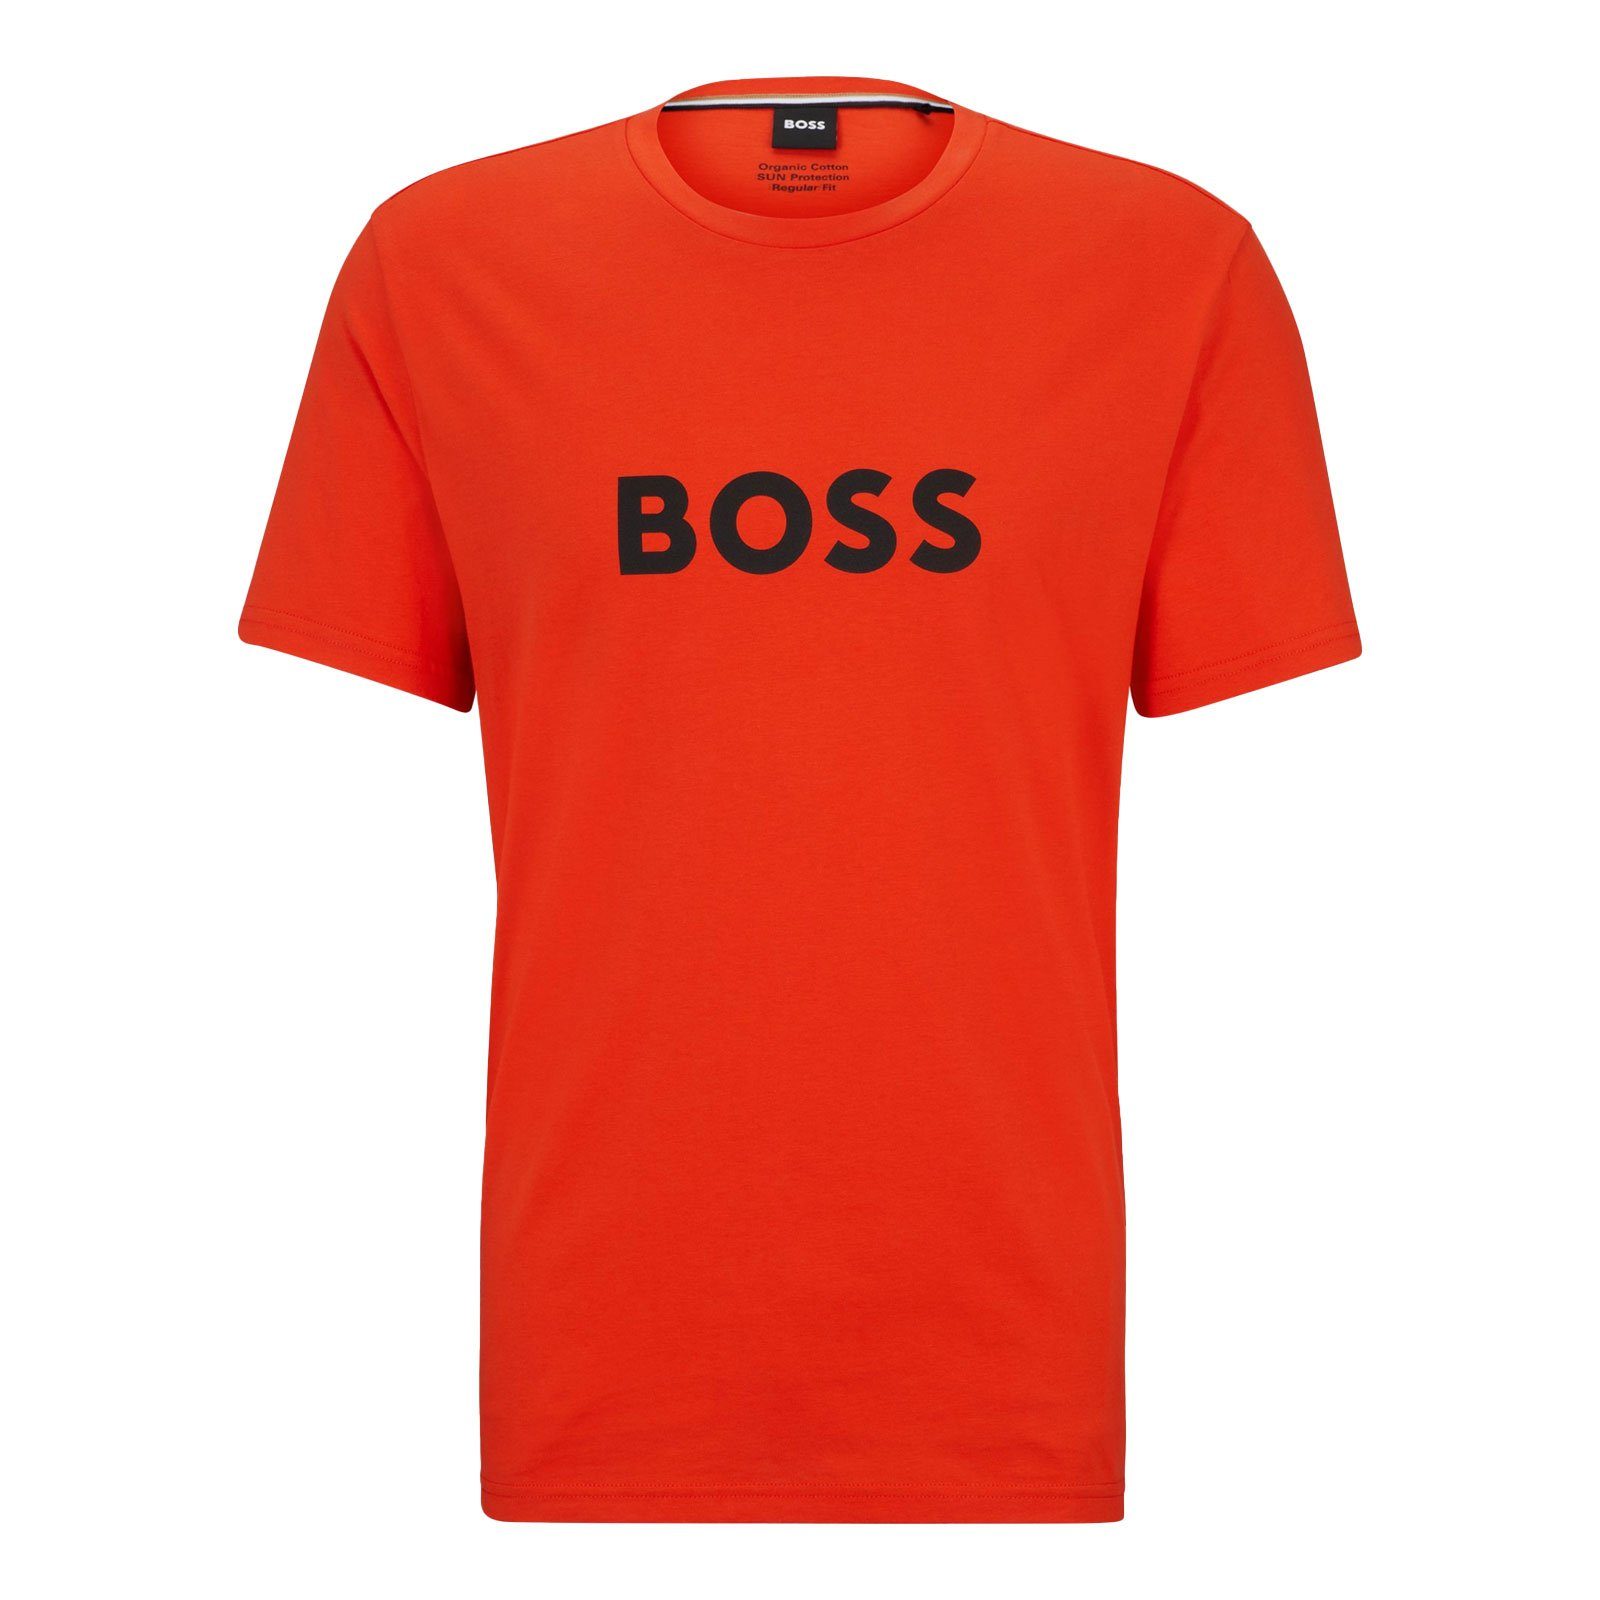 T-Shirt großem orange auf mit der bright RN Markenprint BOSS T-Shirt Brust 821